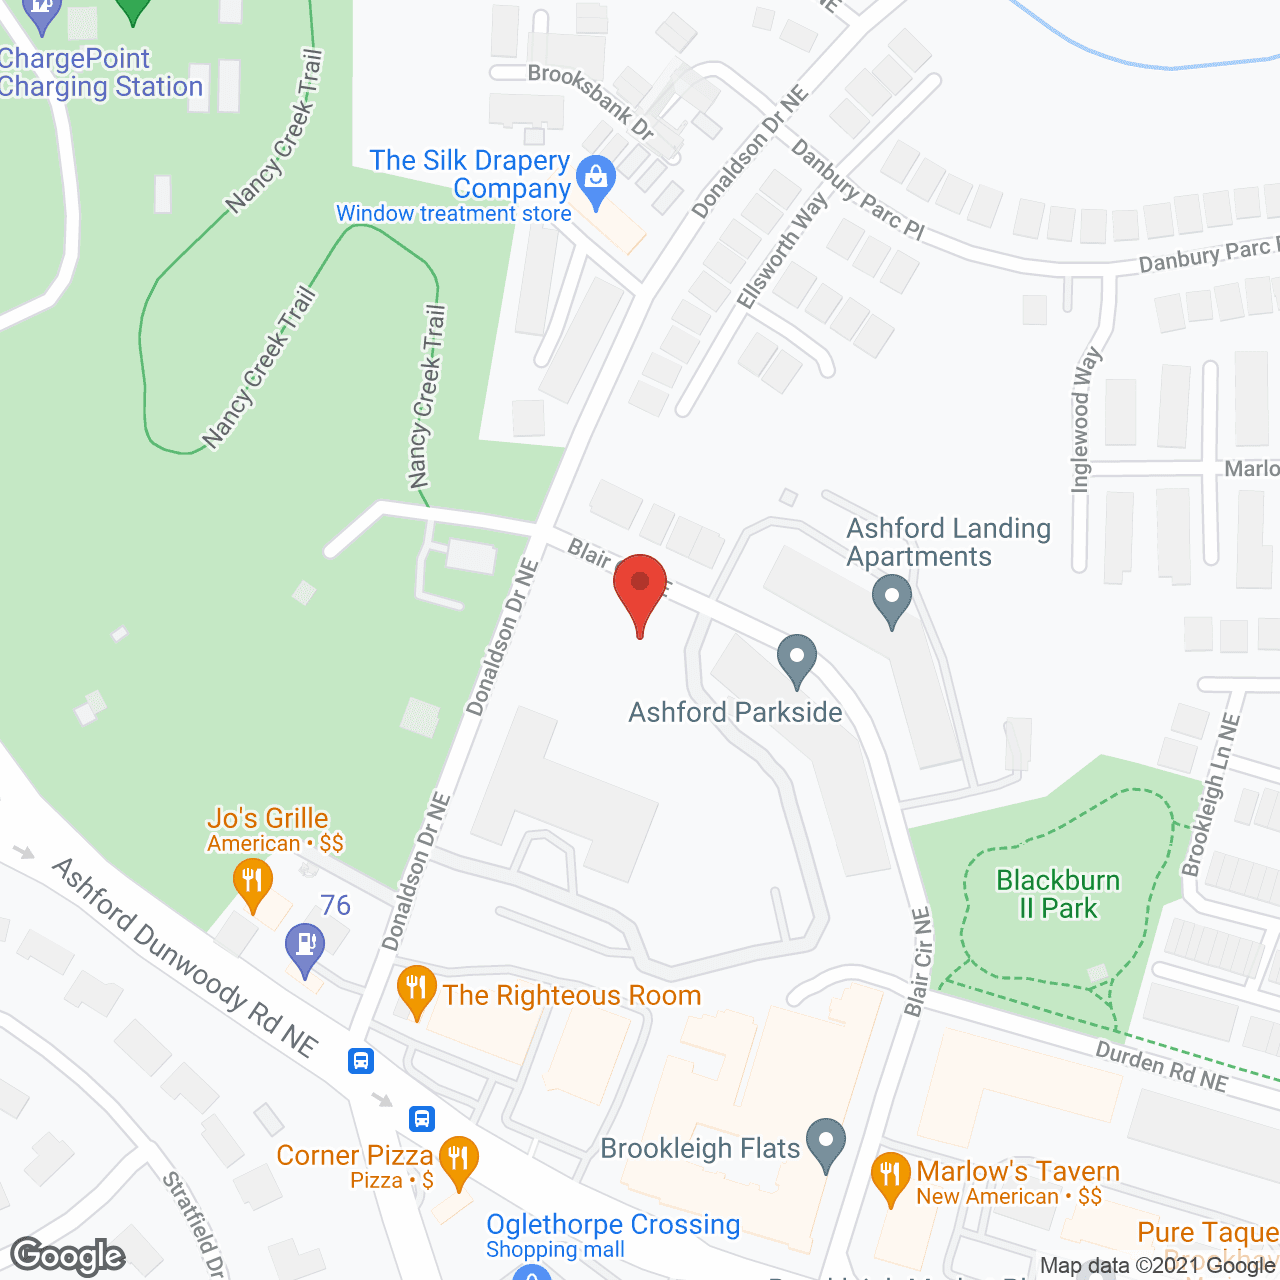 Ashford Parkside in google map